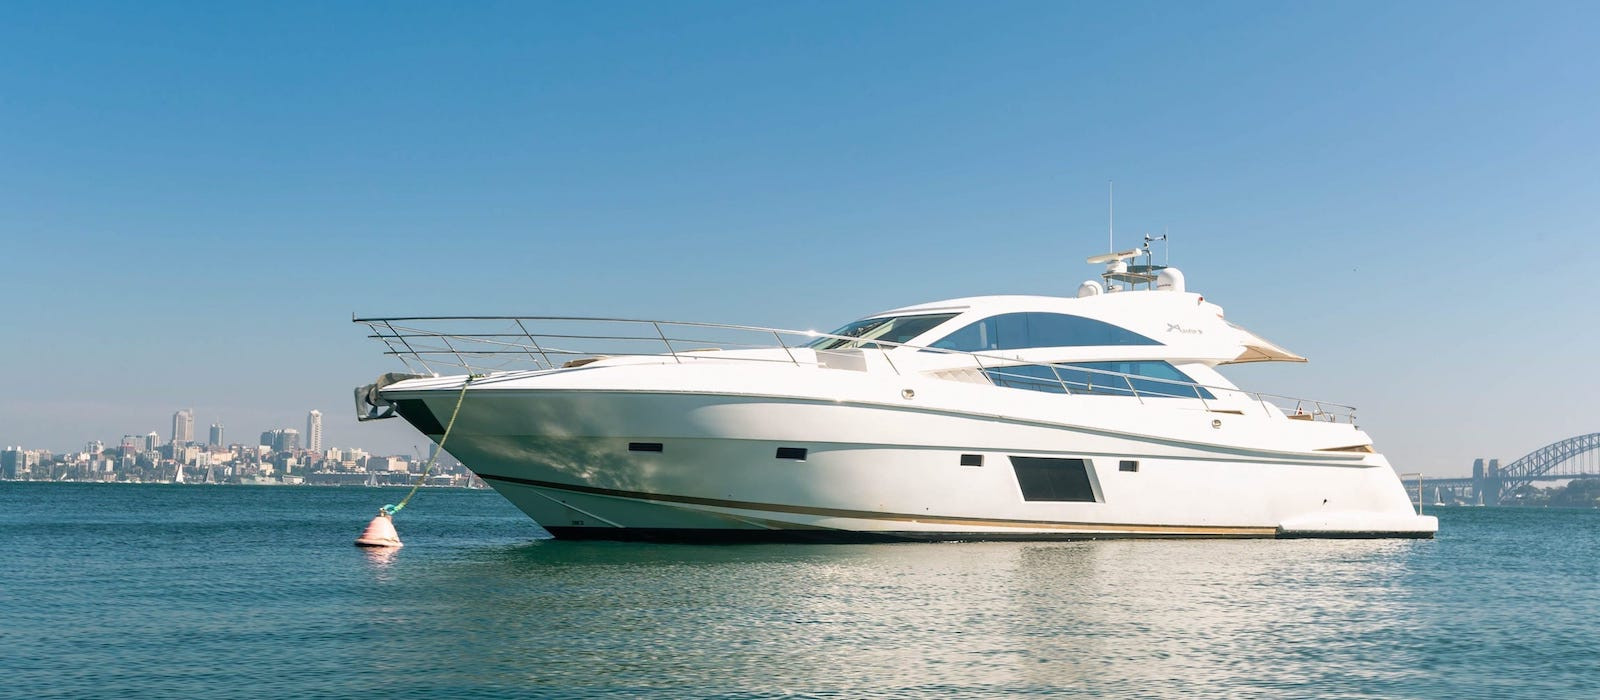 Profile image of Aquabay luxury boat hire